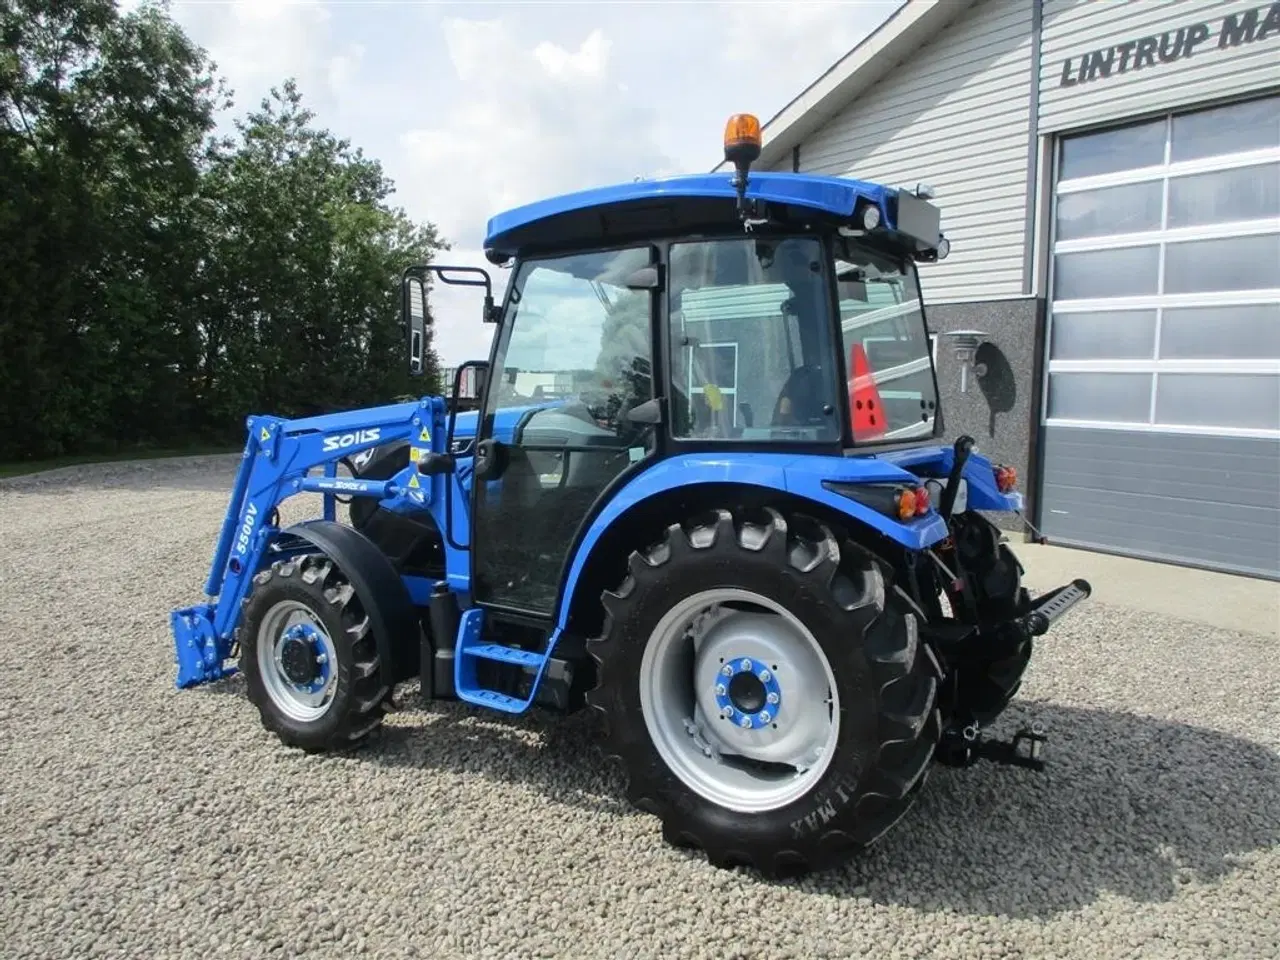 Billede 6 - Solis 50 Fabriksny traktor med 2 års garanti, lukket kabine med klima anlæg, og fuldhydraulisk frontlæsser på